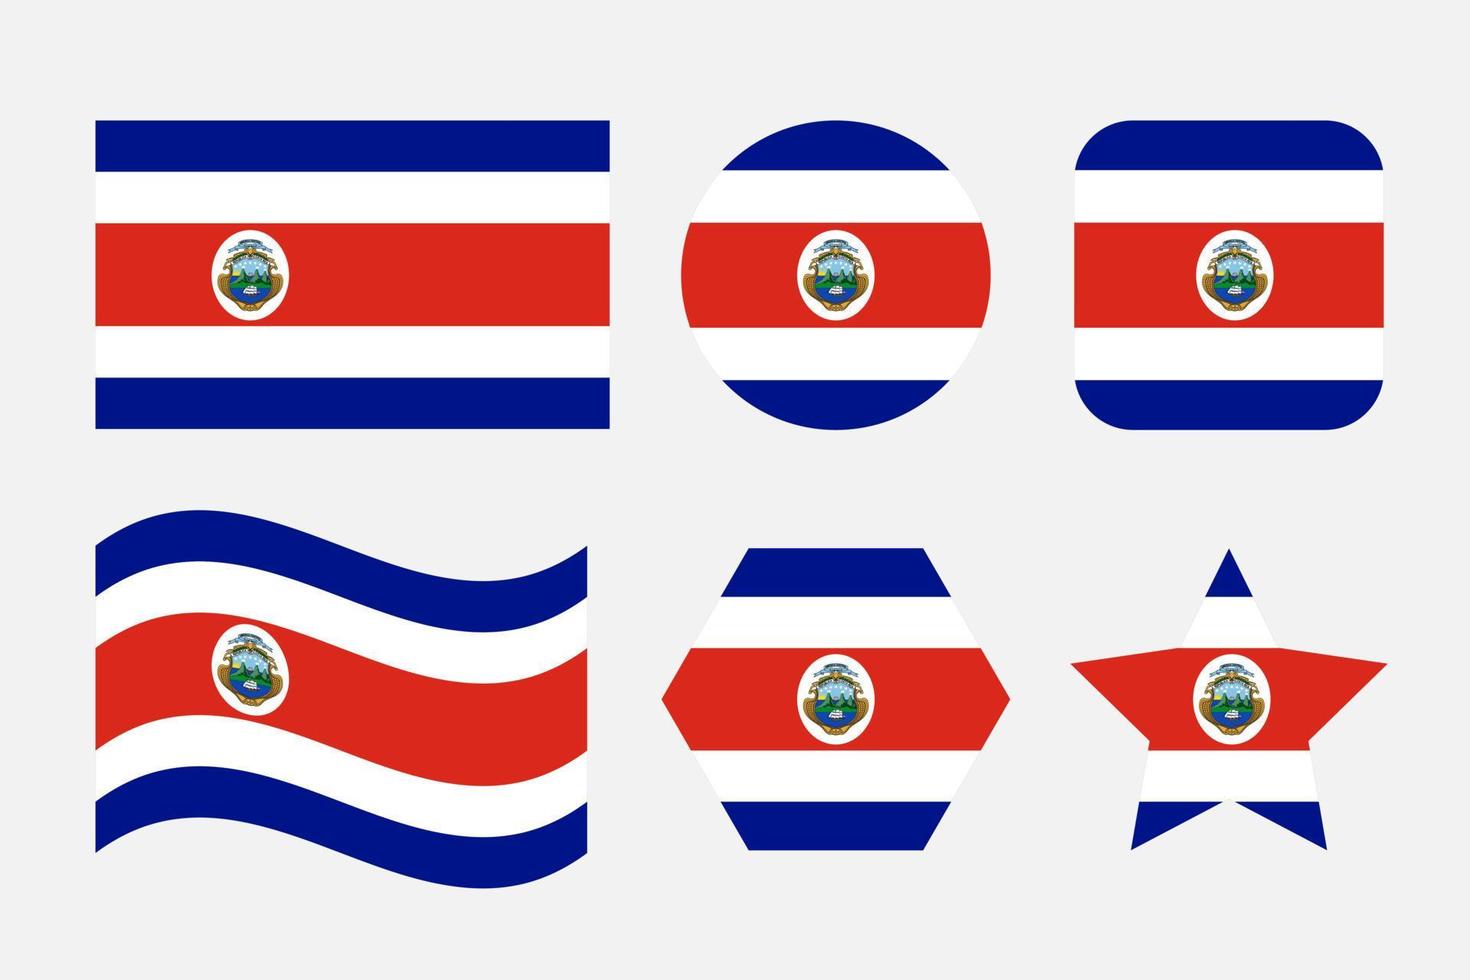 Costa Rica Flagge einfache Illustration für Unabhängigkeitstag oder Wahl vektor